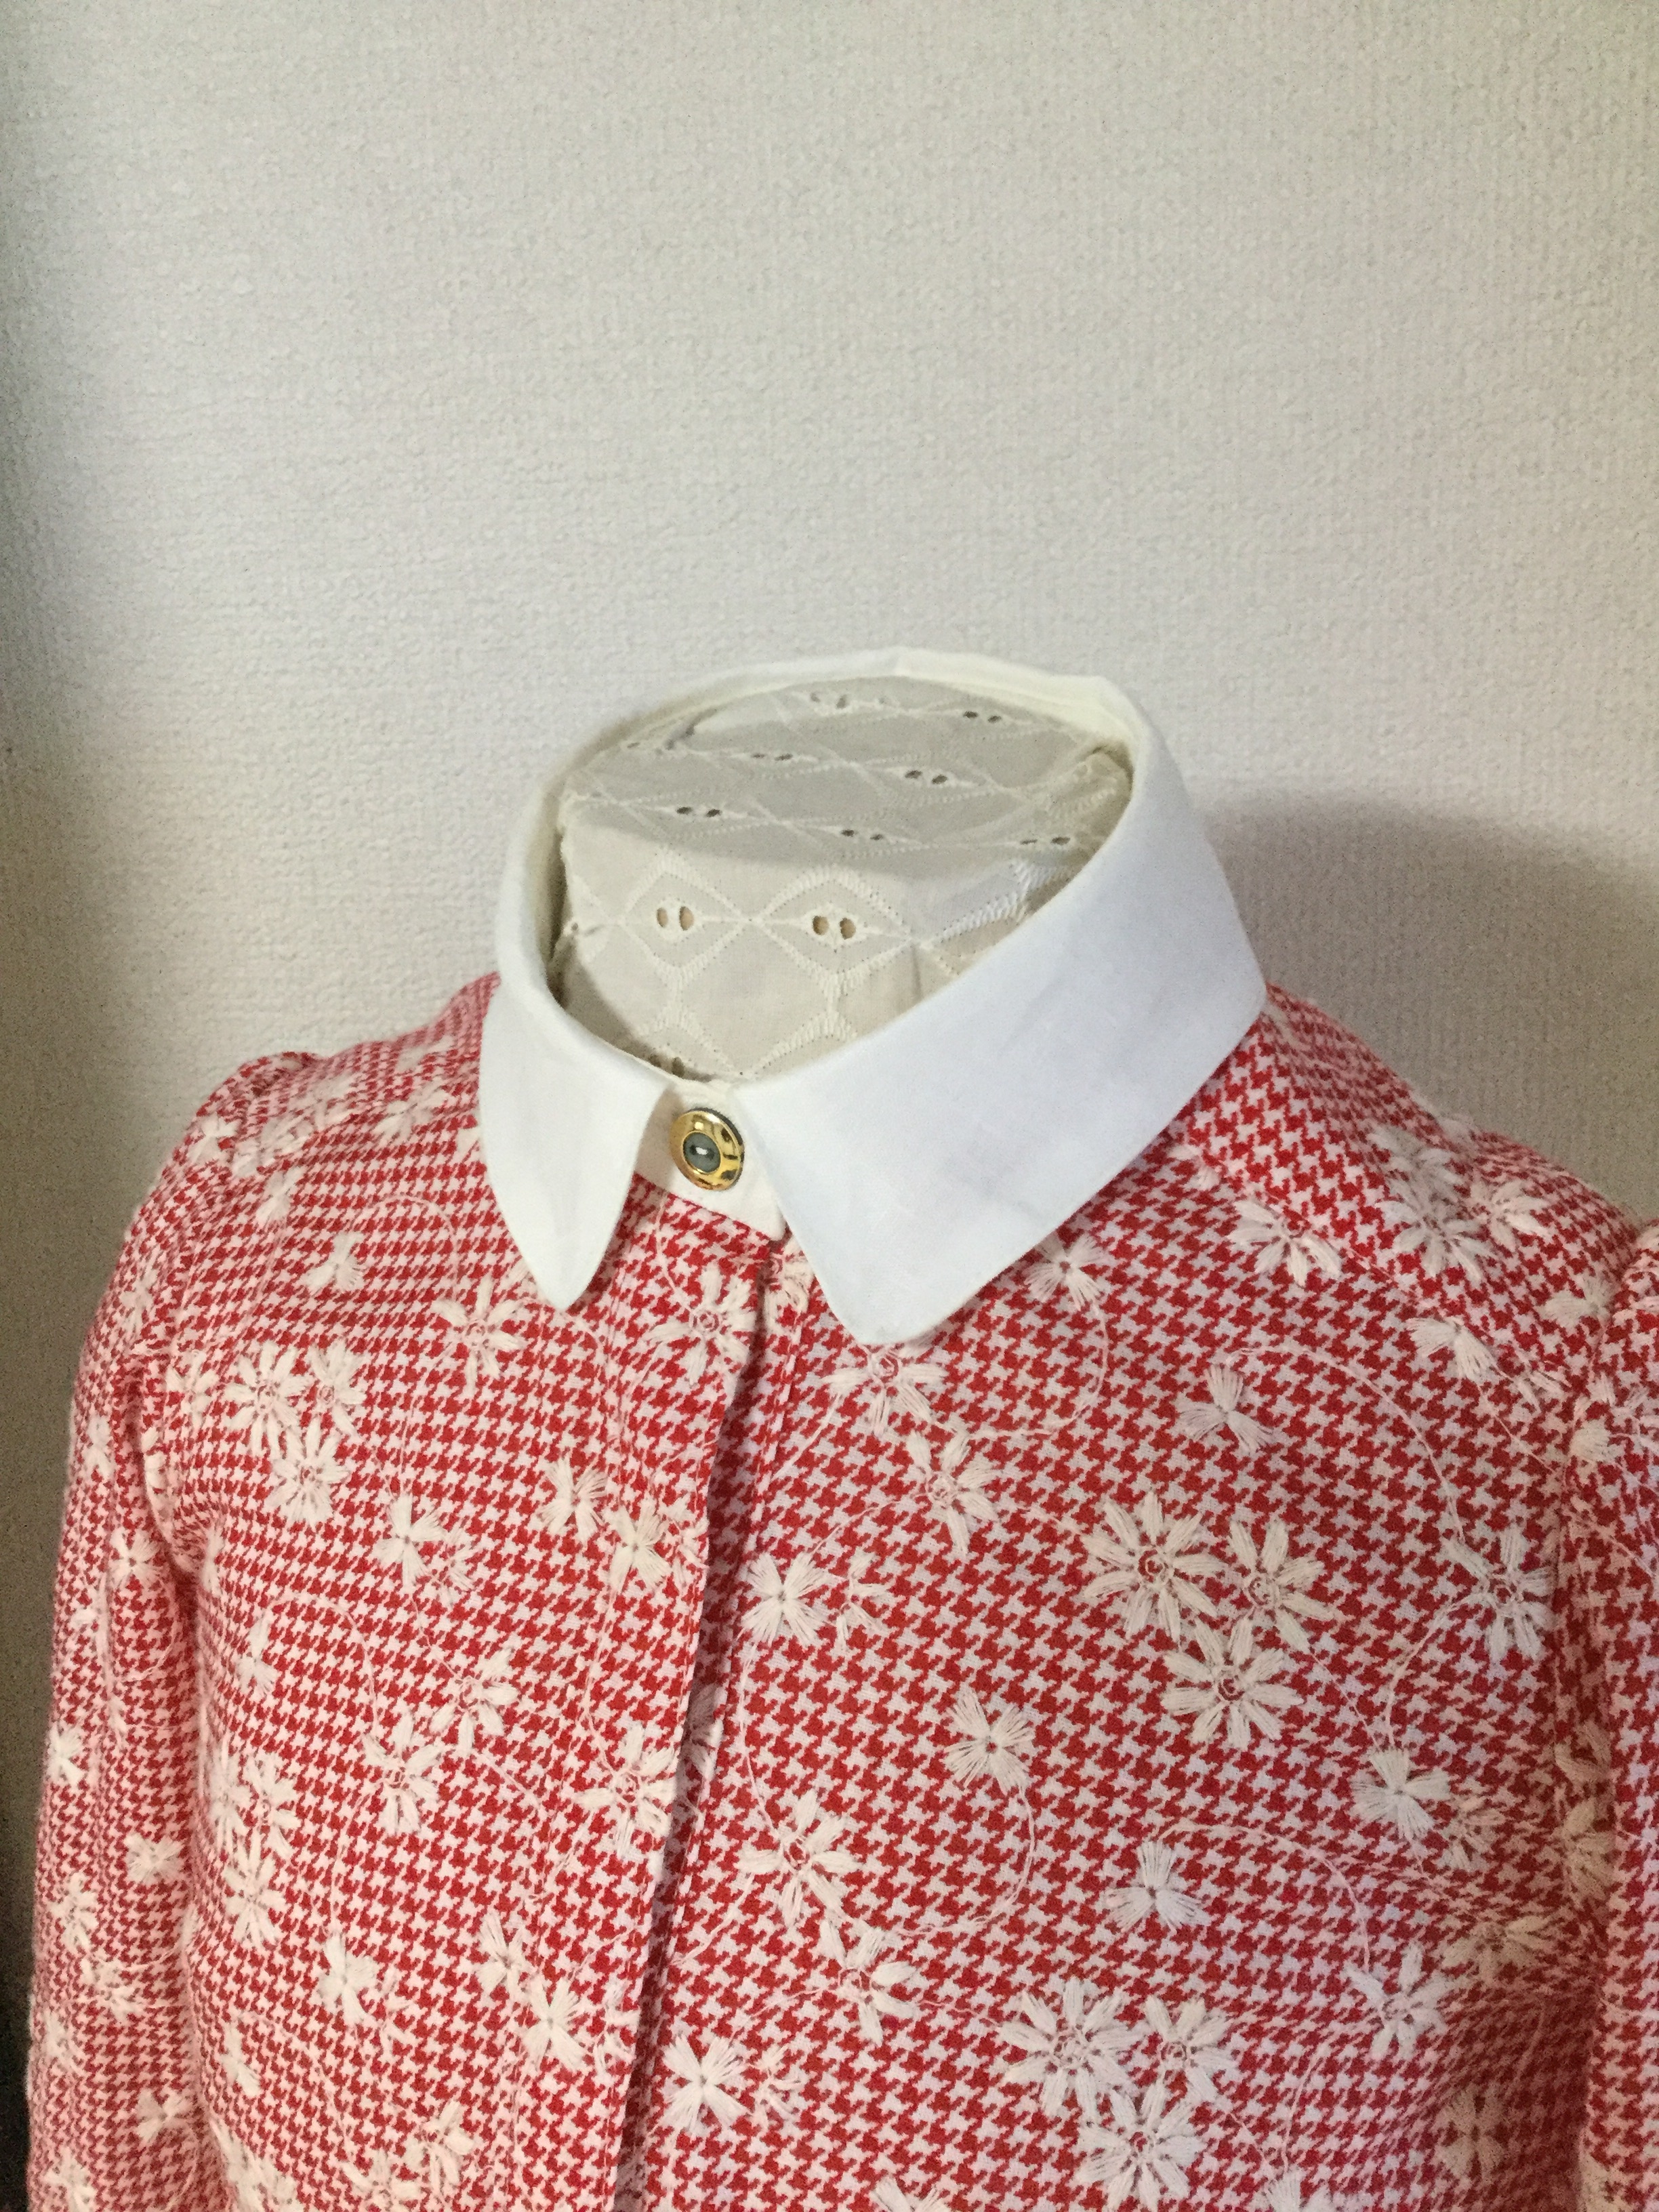 オシャレなレトロシャツ 赤 ビンテージボタン使用 Iichi ハンドメイド クラフト作品 手仕事品の通販